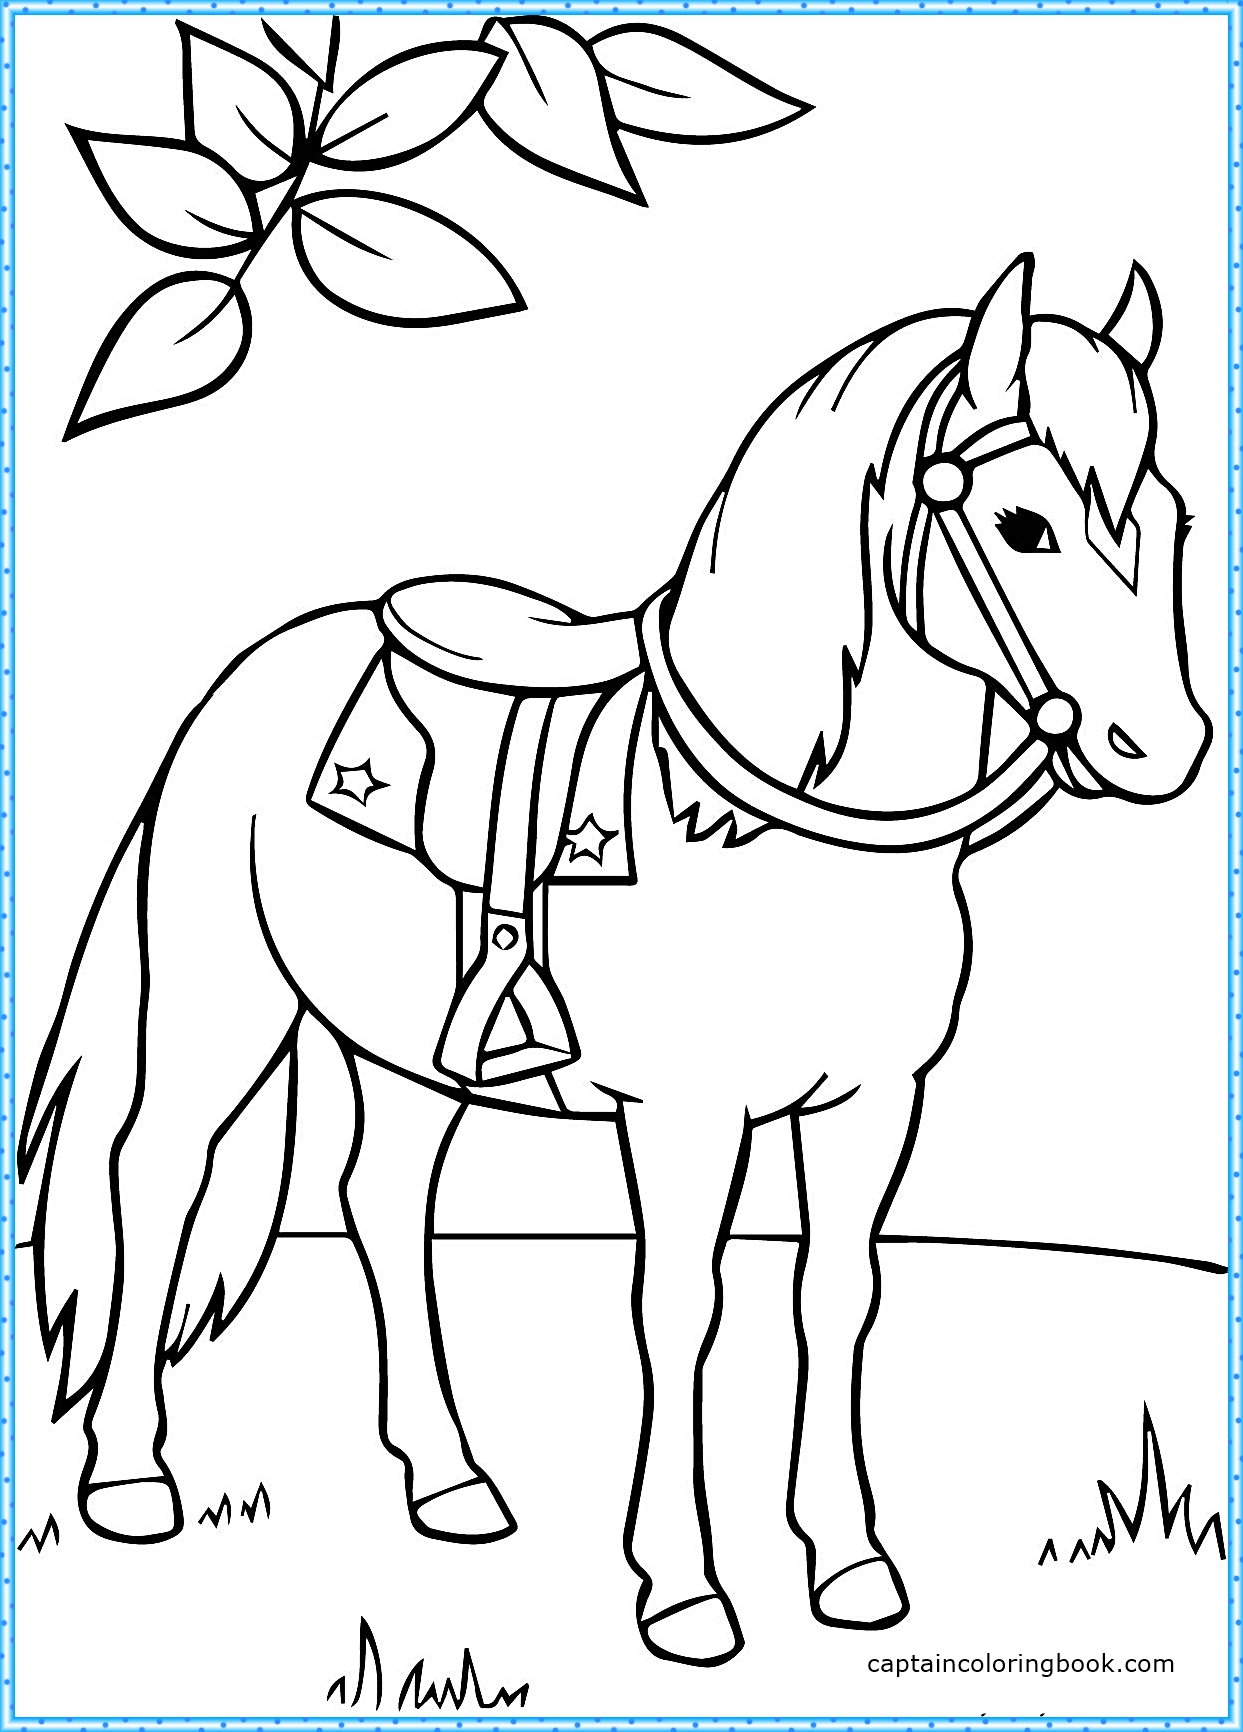 Раскрасить лошадку. Раскраска. Лошади. Лошадь раскраска для детей. Лошадка раскраска для малышей. Раскраски лошадки для девочек.